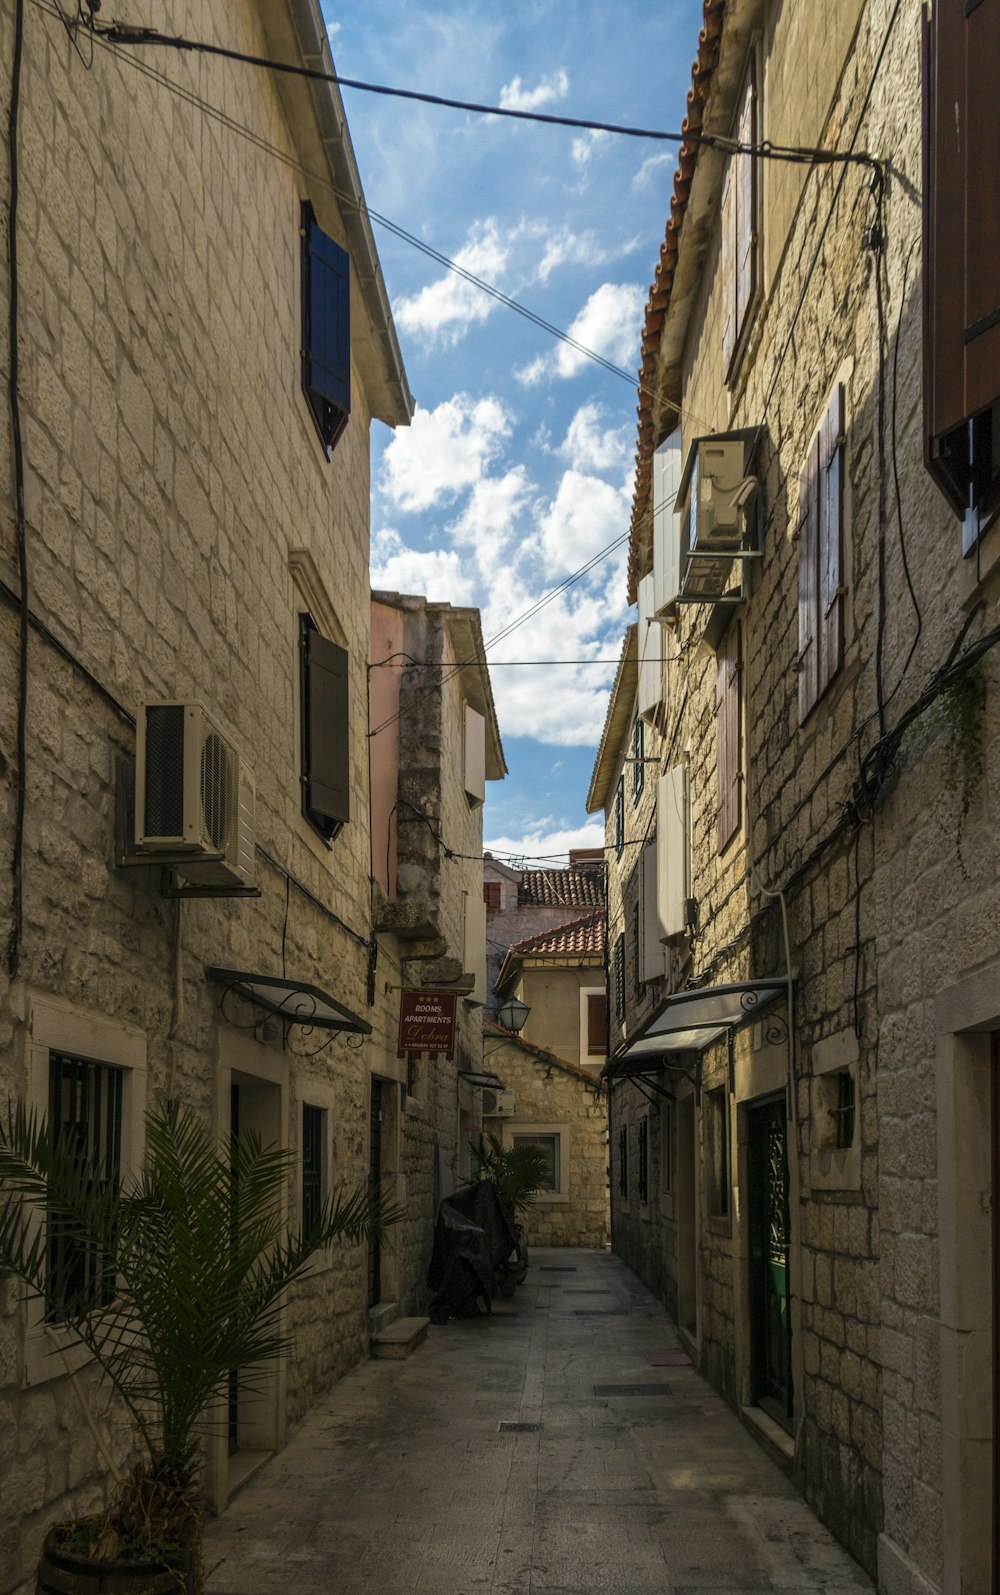 alleyway near houses